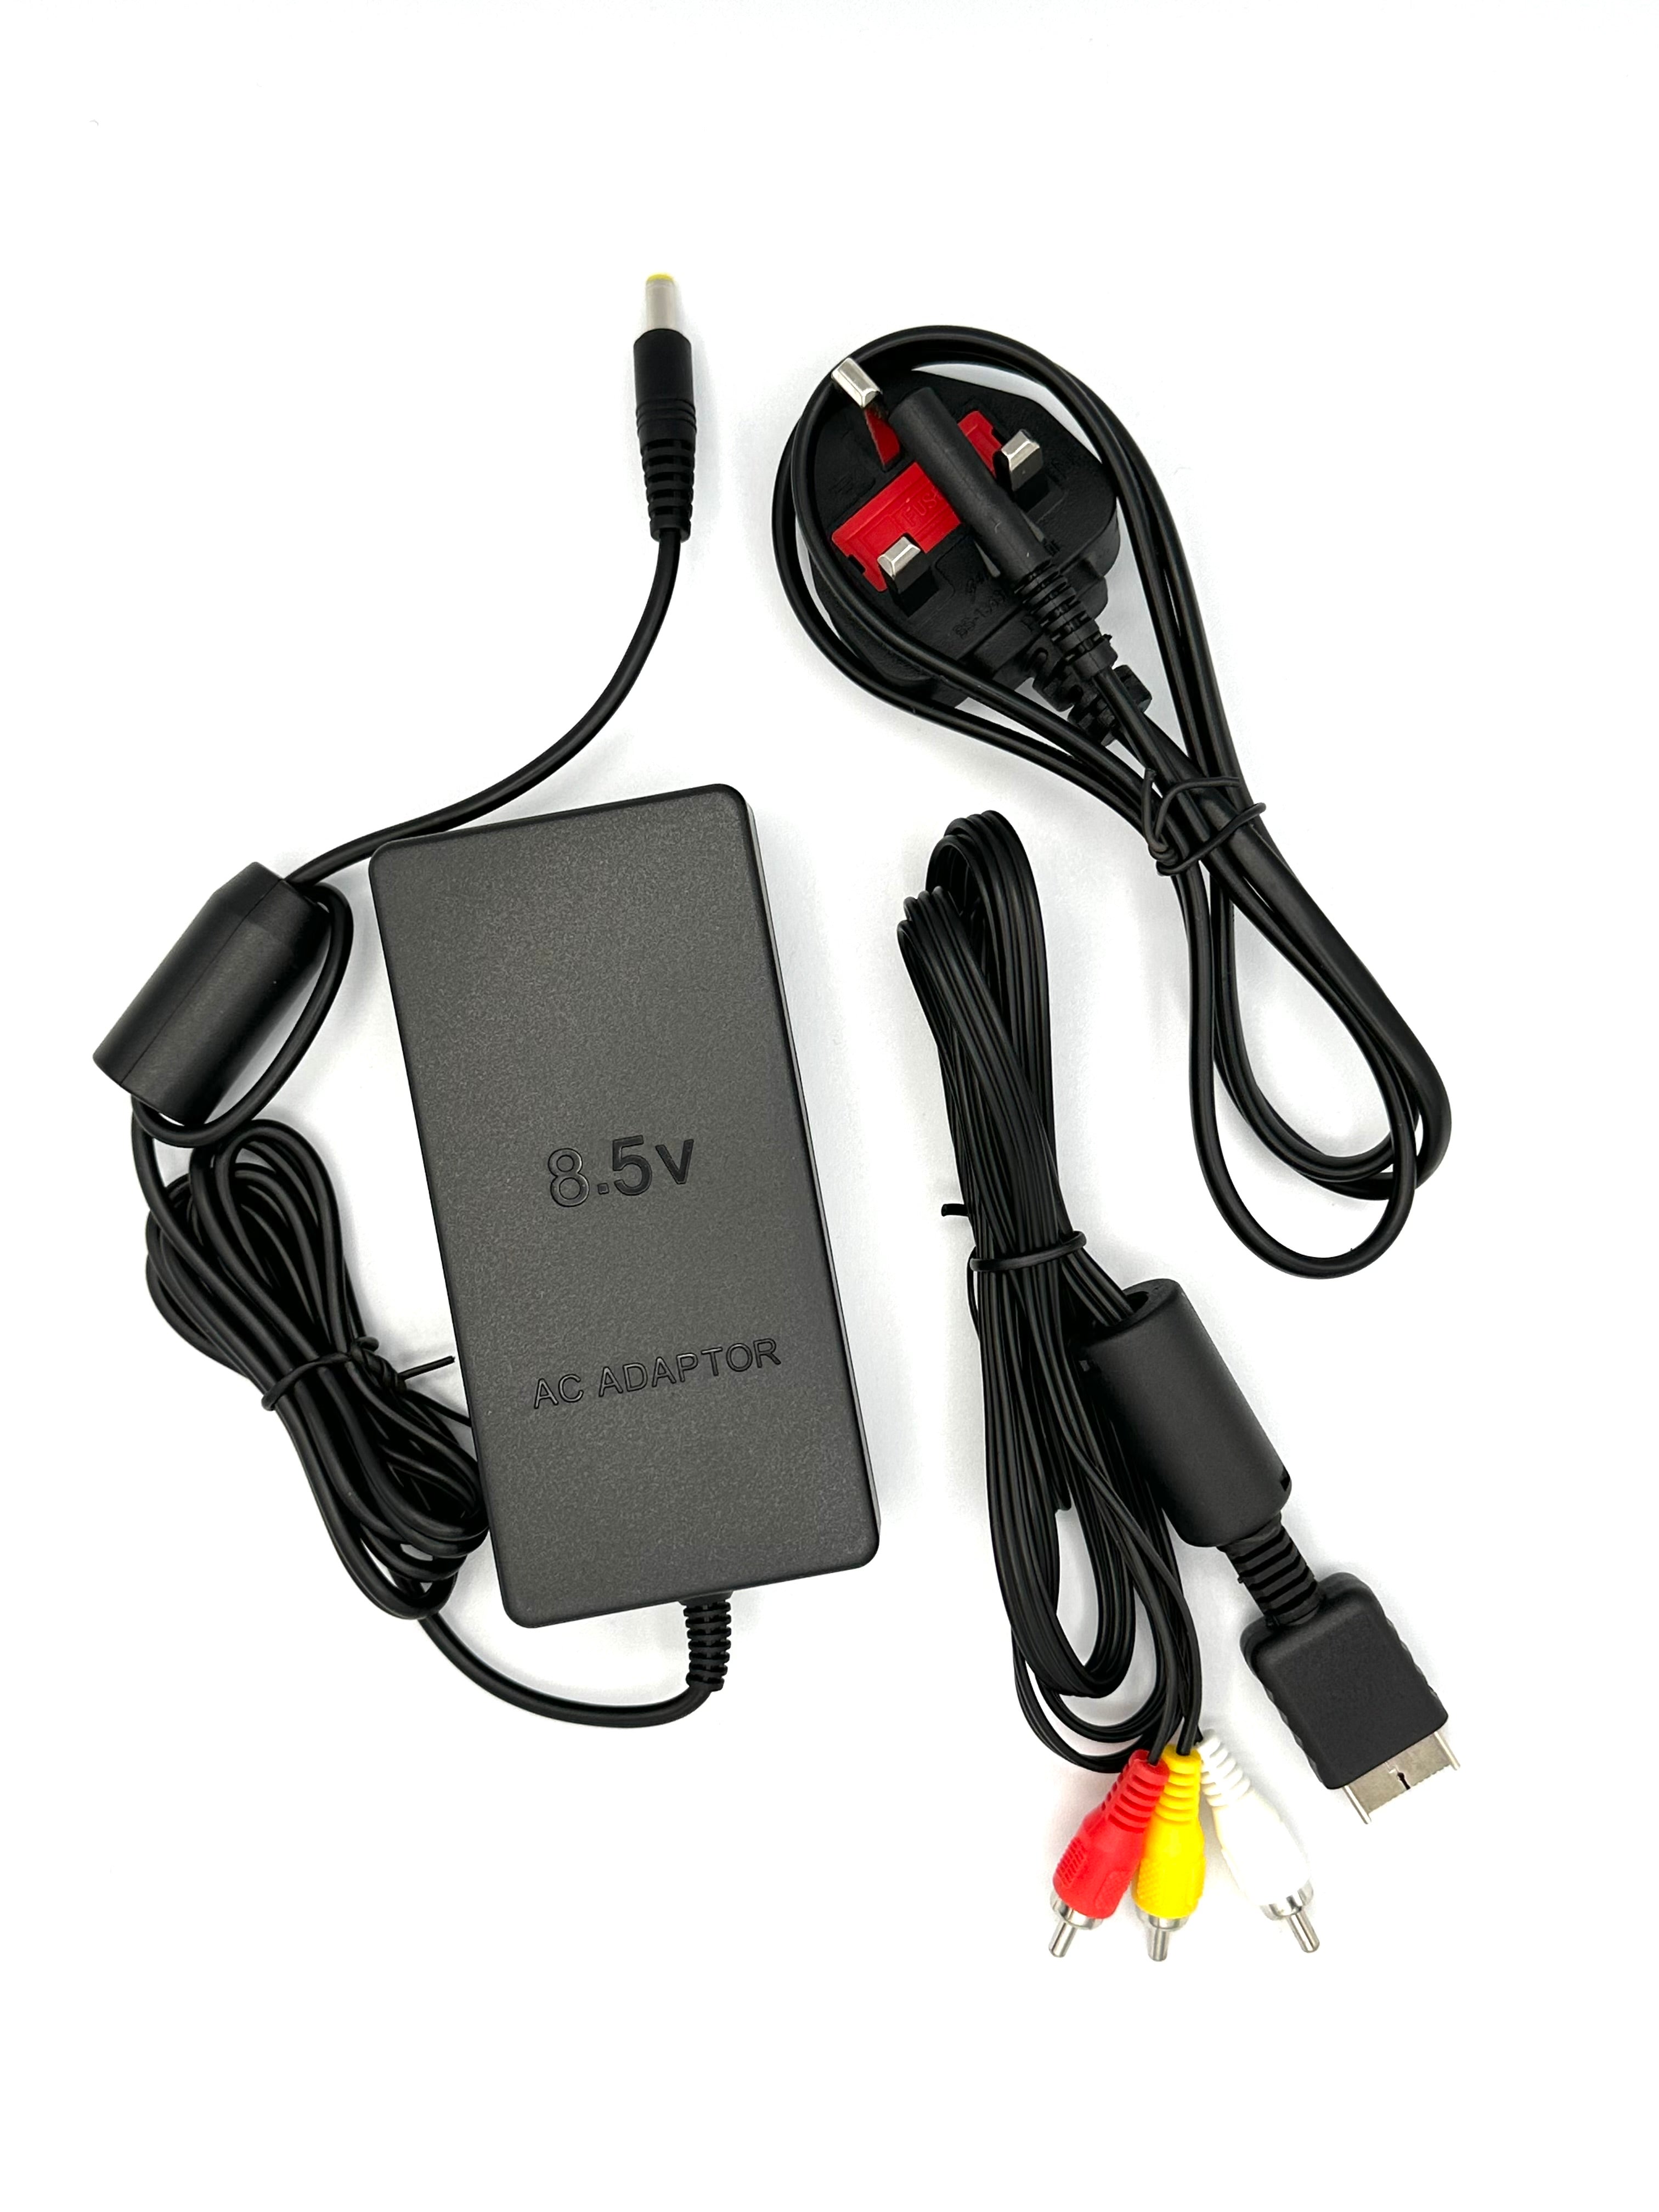 PlayStation 2 Slim Power Supply Adapter + AV Cable + UK Plug